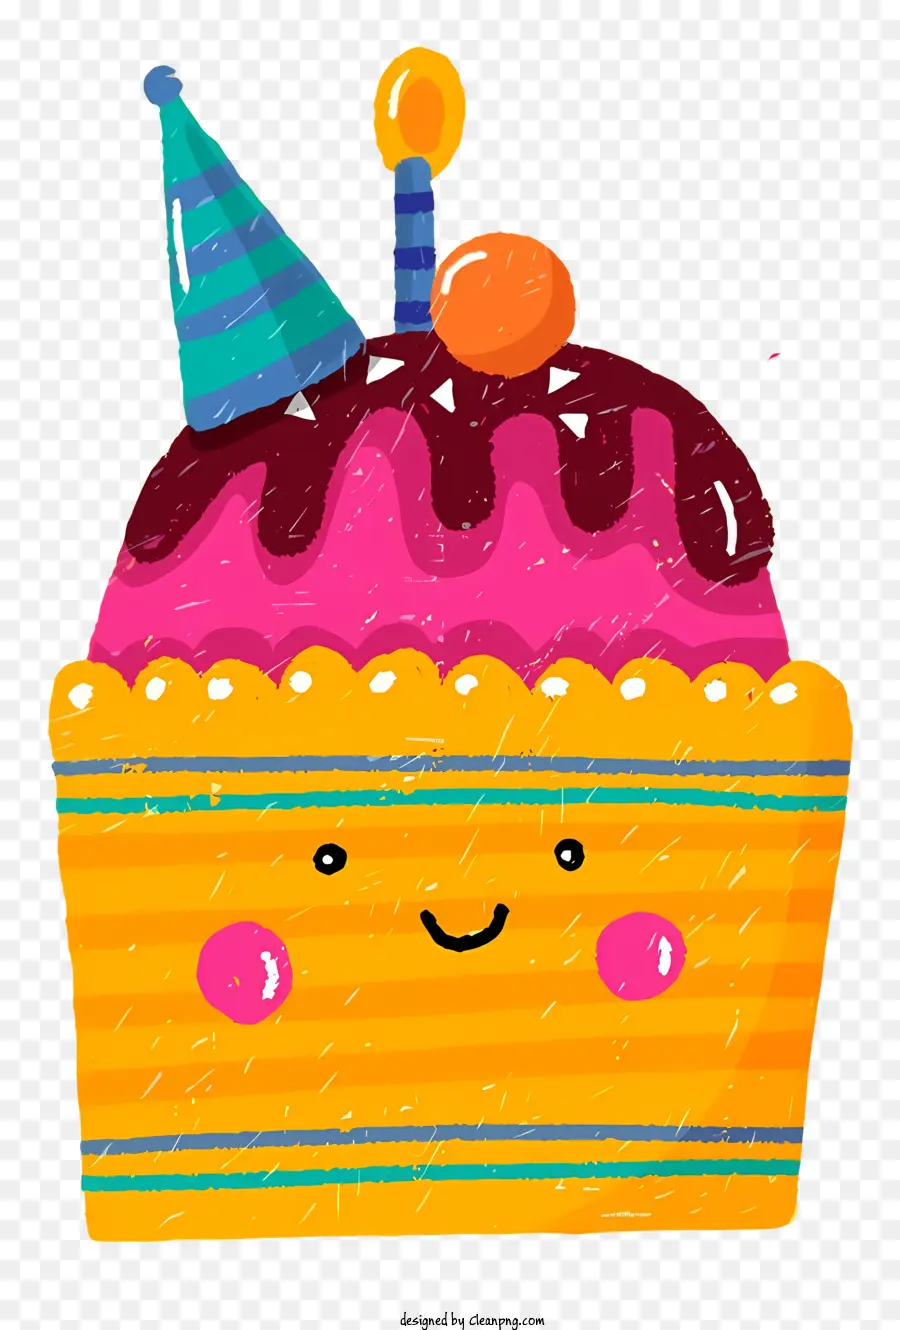 Torta di compleanno - Torta di compleanno con cappello da festa e candele